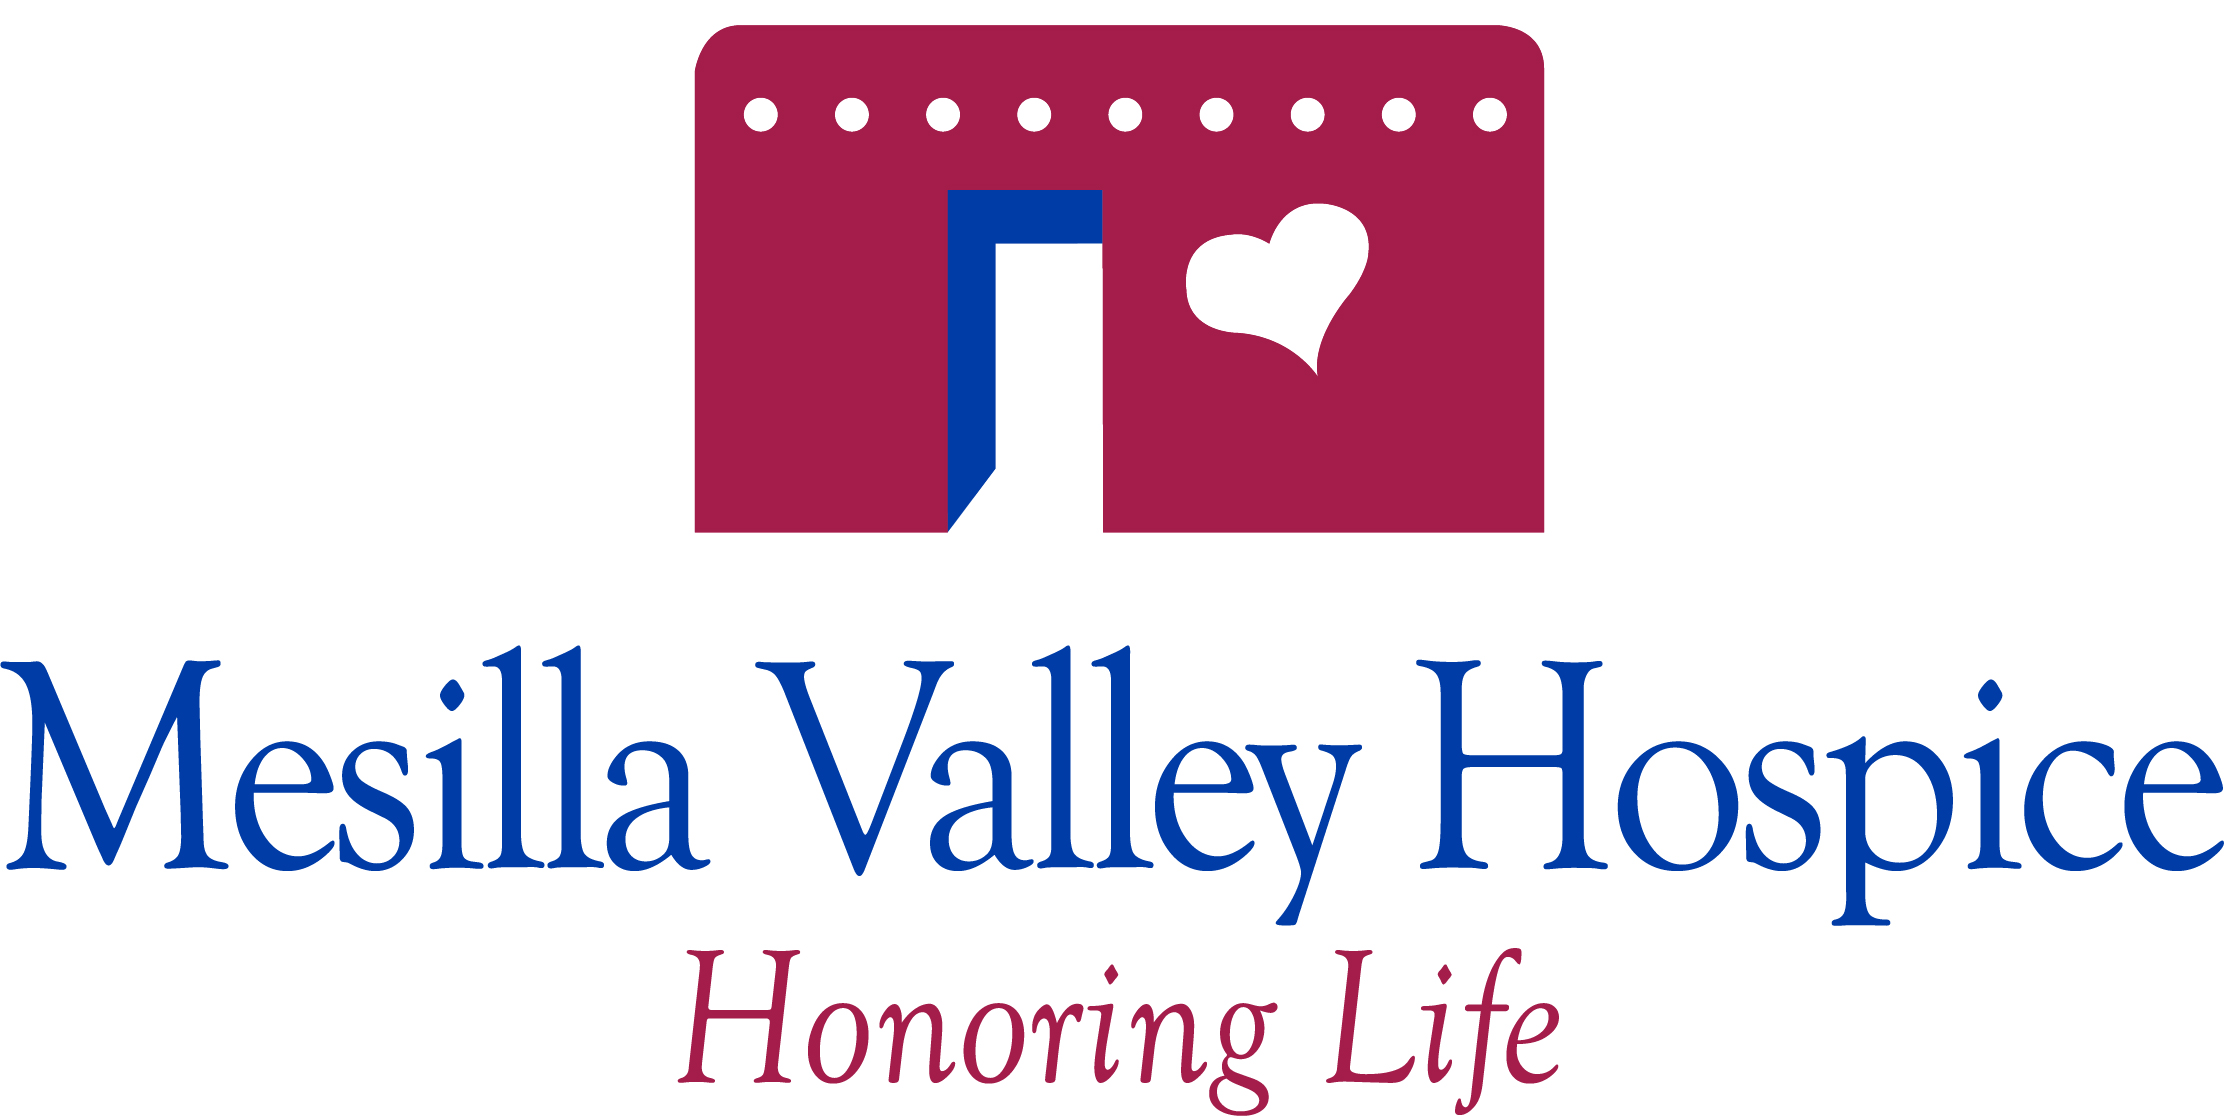 B Hospicio de Mesa Valley (Nivel Promise Garden)